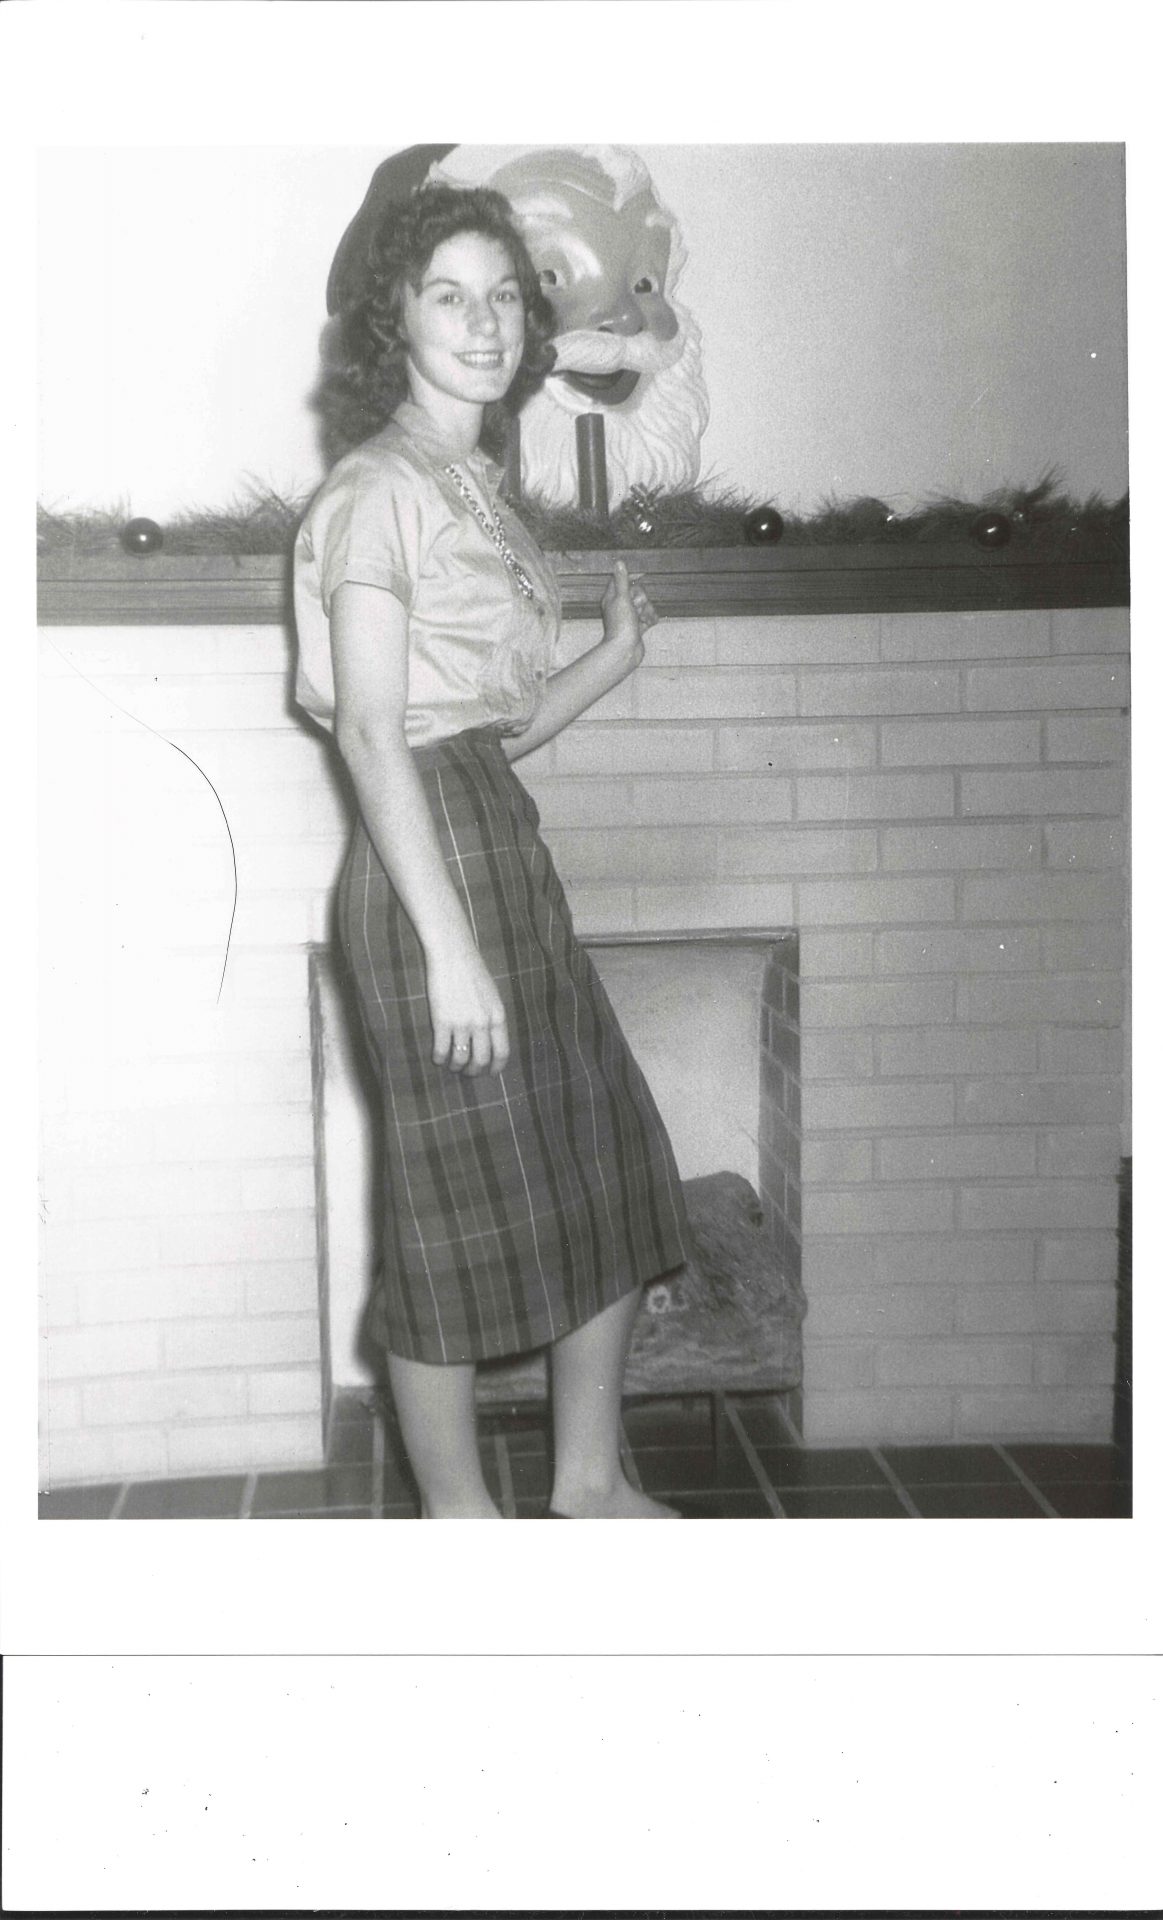 Barbara as a teen